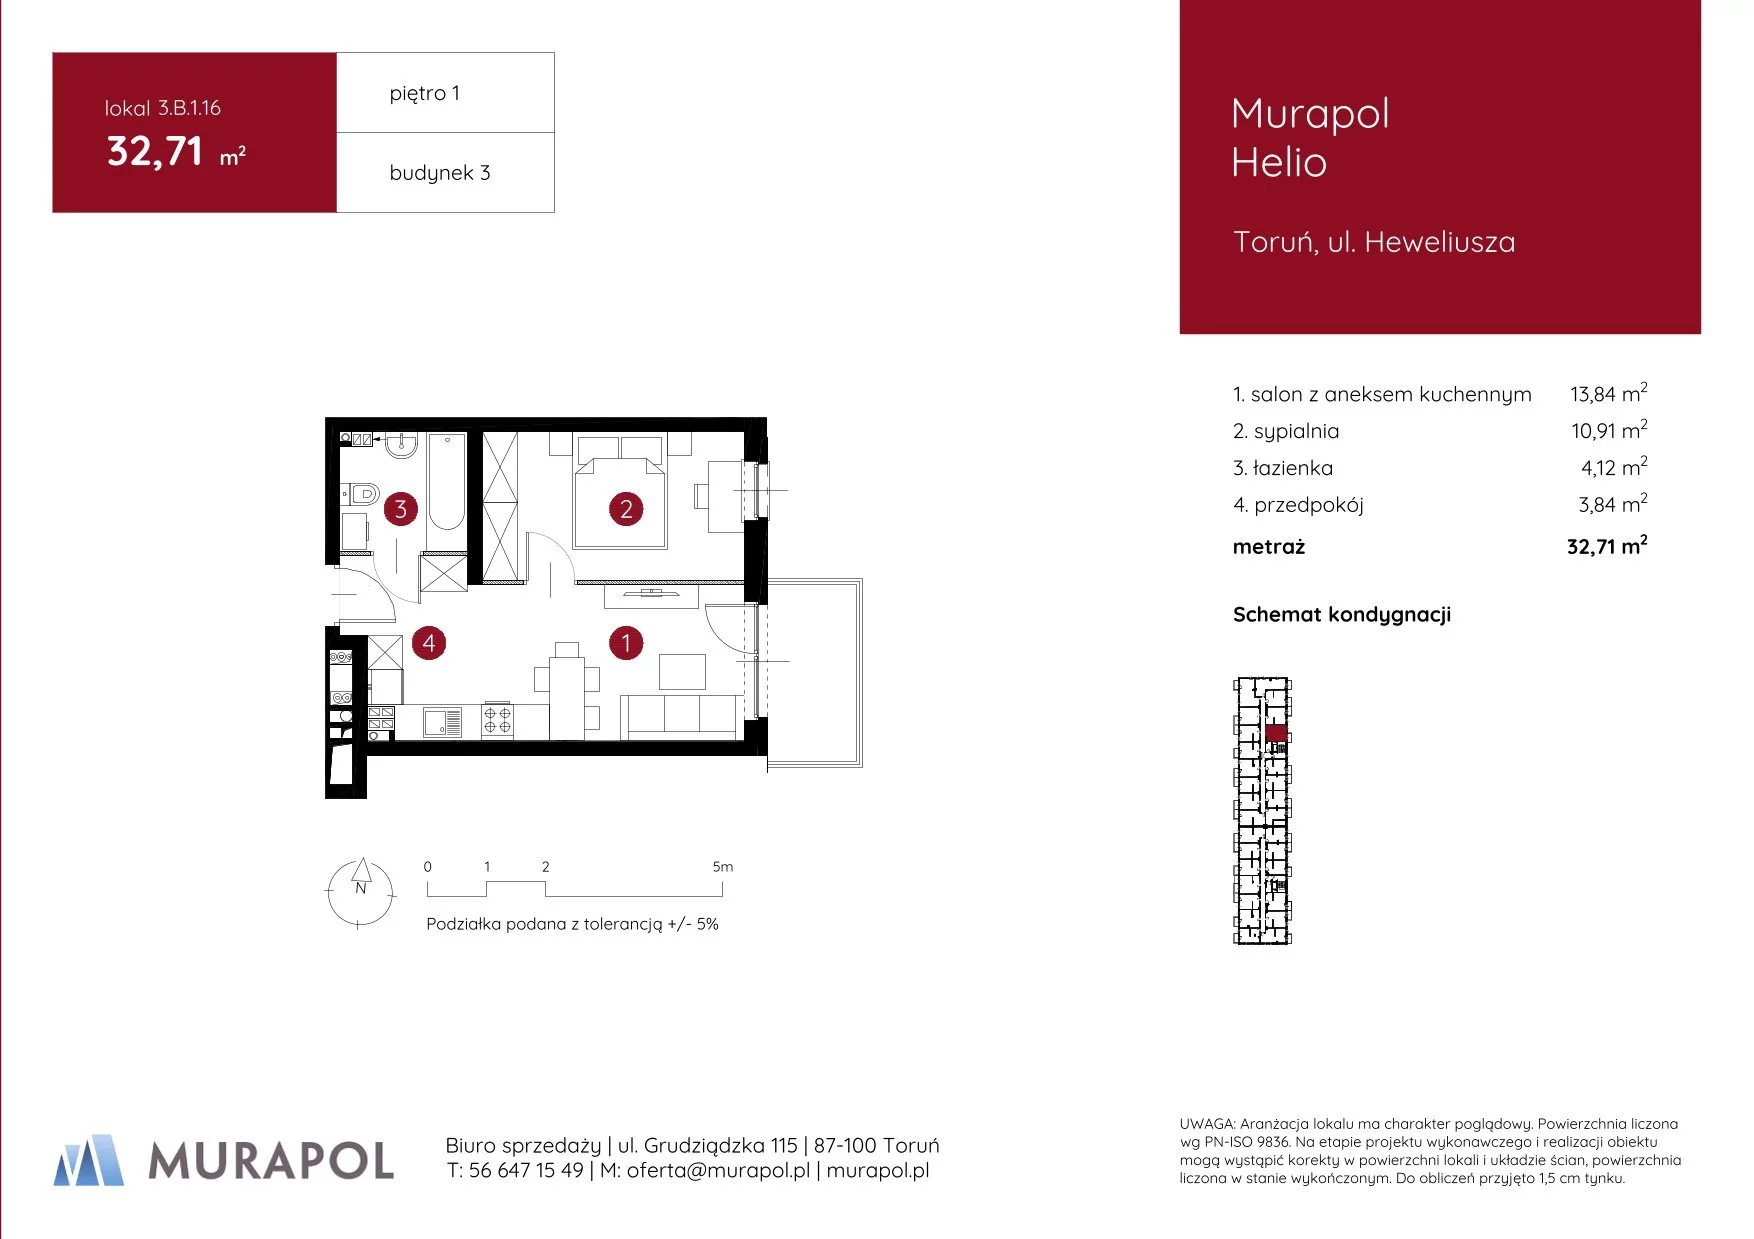 Mieszkanie 32,71 m², piętro 1, oferta nr 3.B.1.16, Murapol Helio, Toruń, Wrzosy, JAR, ul. Heweliusza